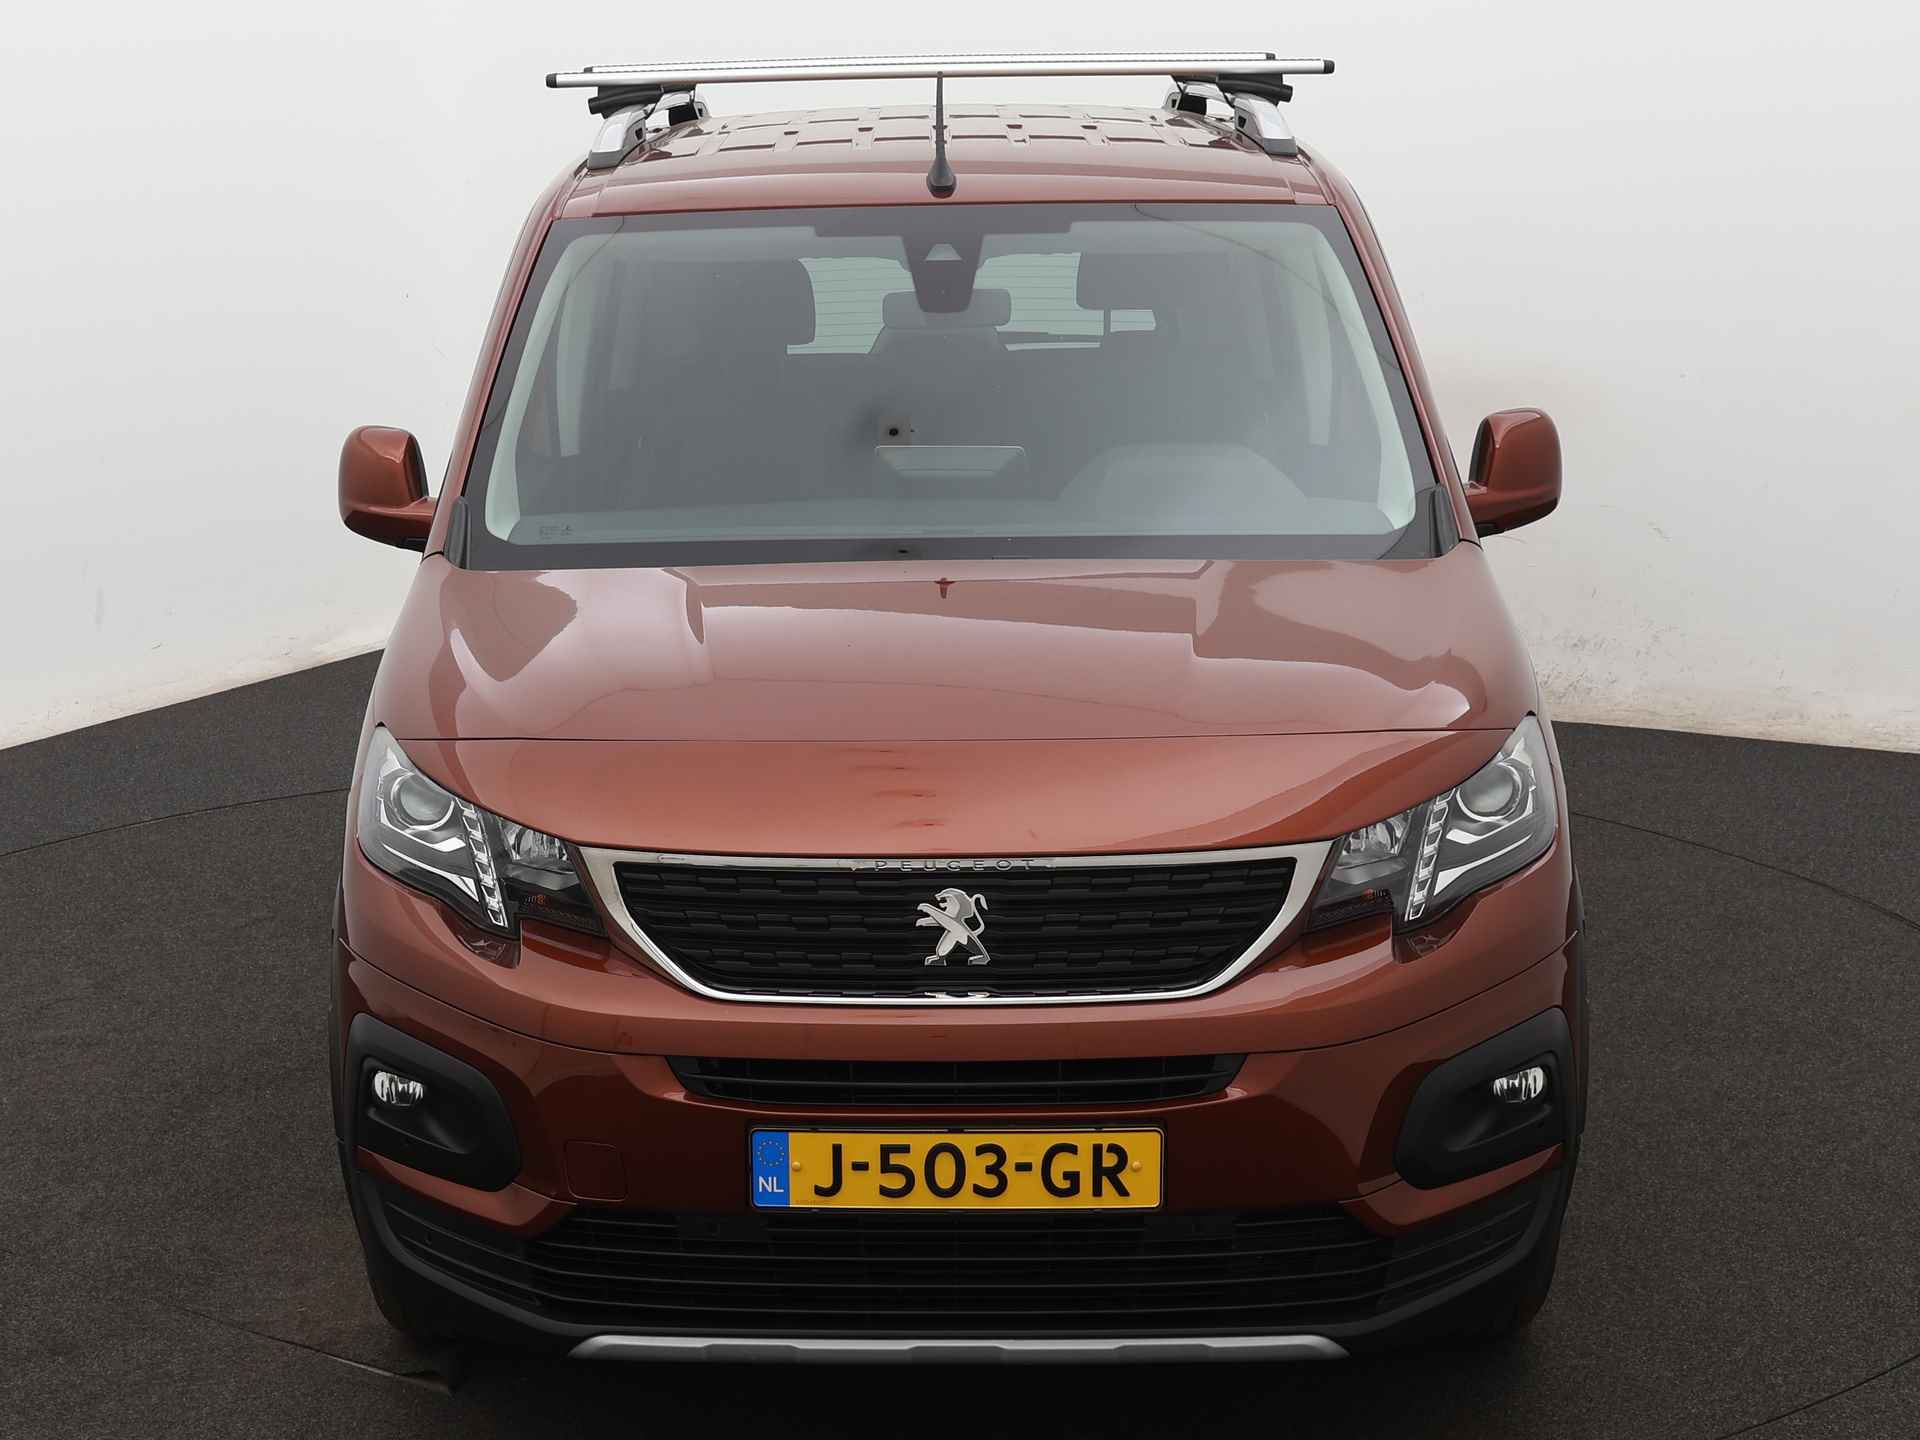 Peugeot Rifter 1.2 Puretech Allure Ingepland voor nieuwe bodemverlaging t.b.v. rolstoelvervoer (Prijs incl. bodemverlaging) - 23/37